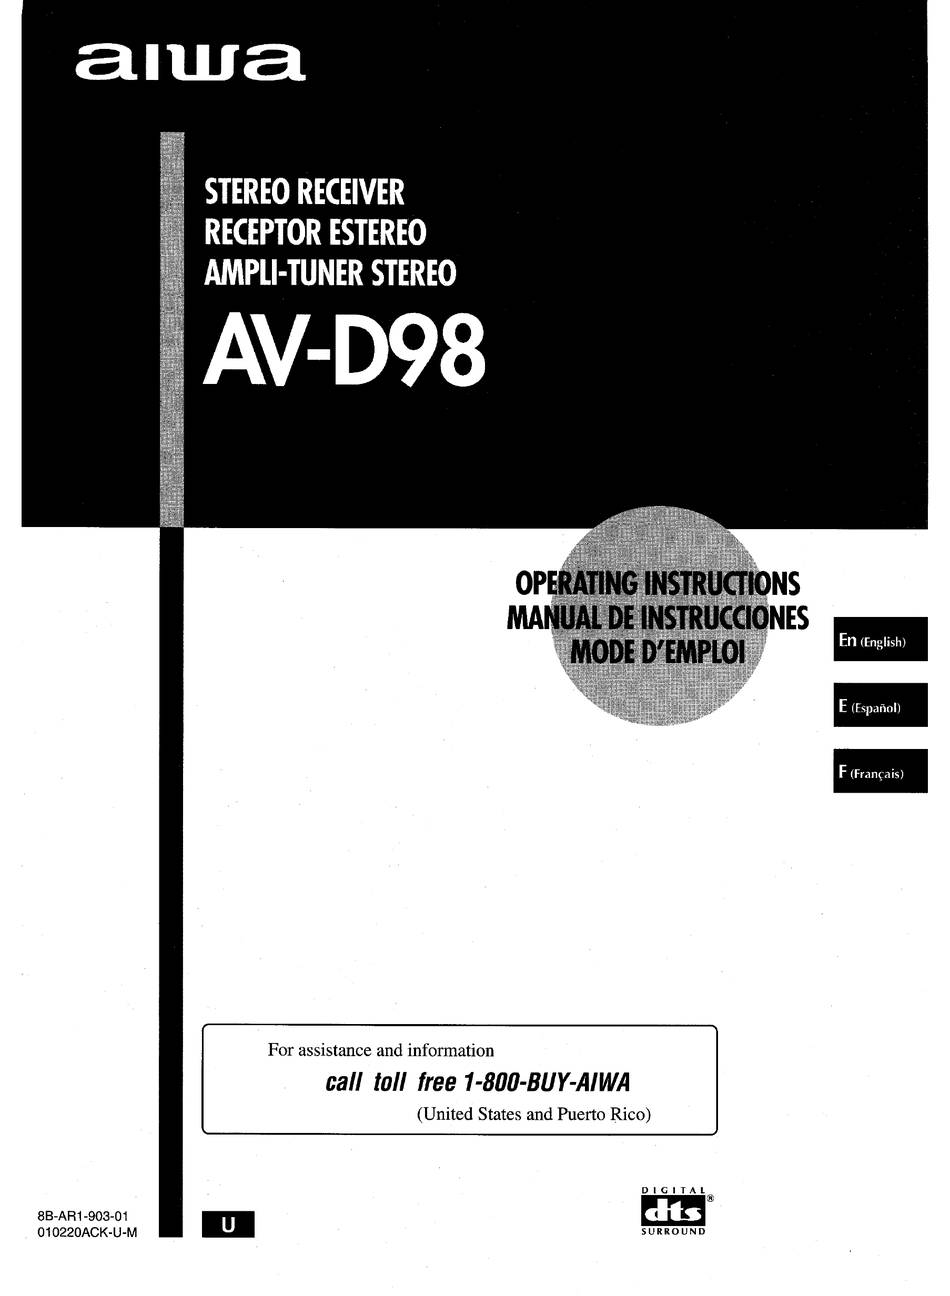 Aiwa AV-D98